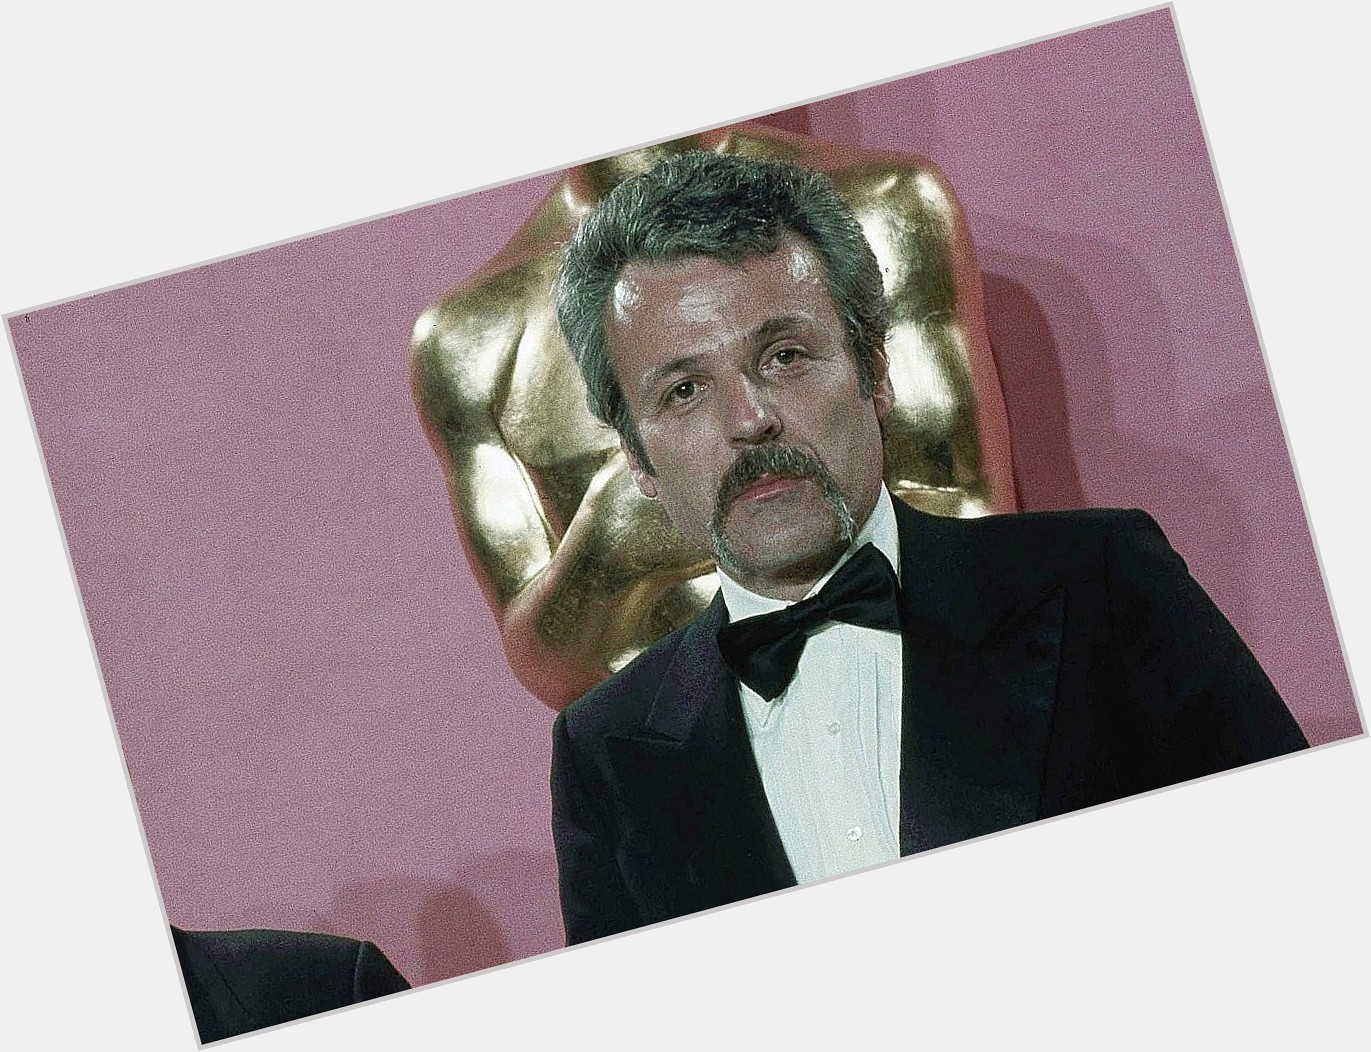 William Goldman, Oscar winner for ‘Butch Cassidy,’ has died